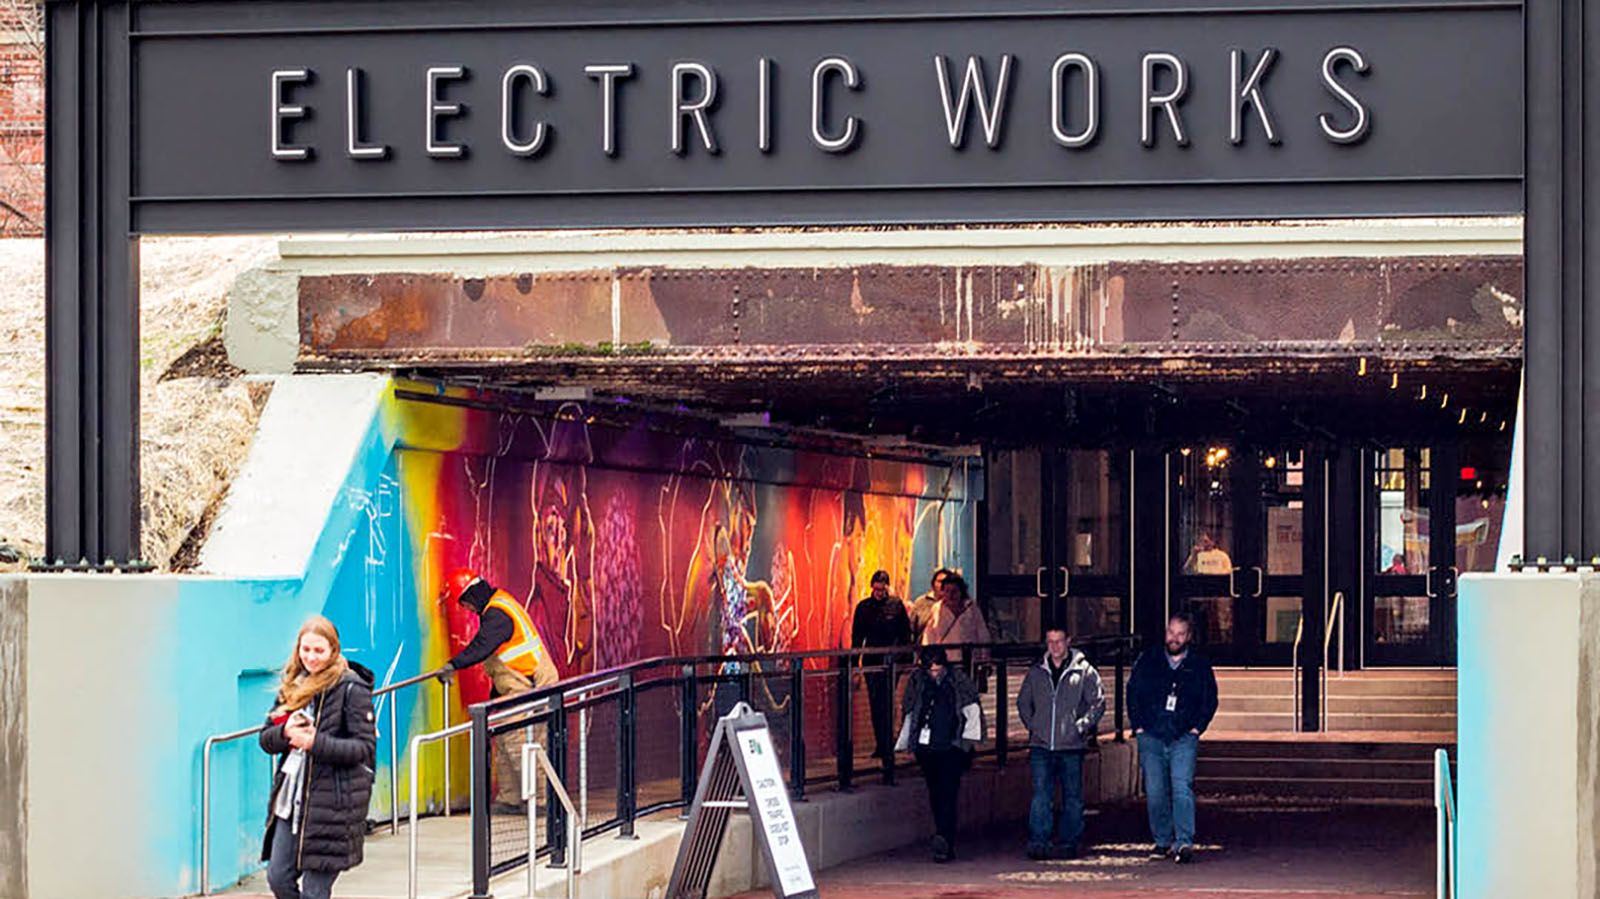 Electric Works is seeking a muralist.